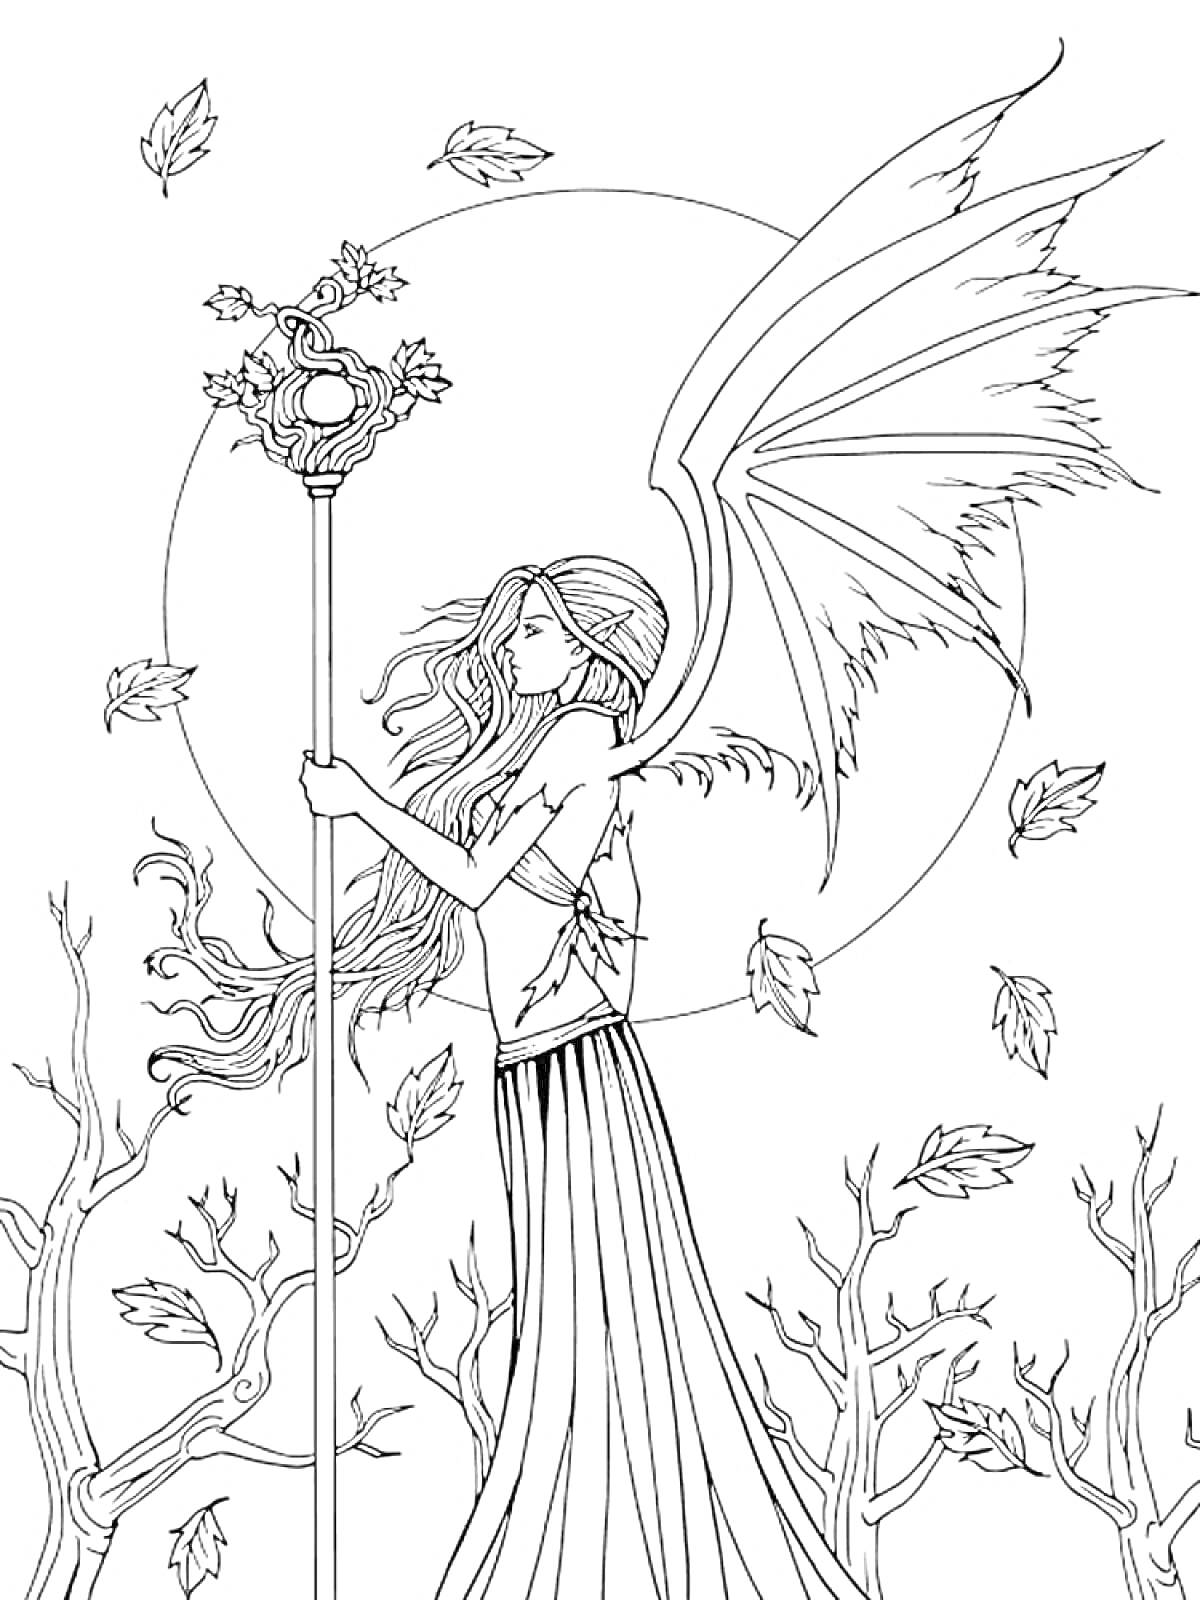 Раскраска Фея с длинными волосами, крыльями и жезлом на фоне полной луны, окружённая деревьями и падающими листьями